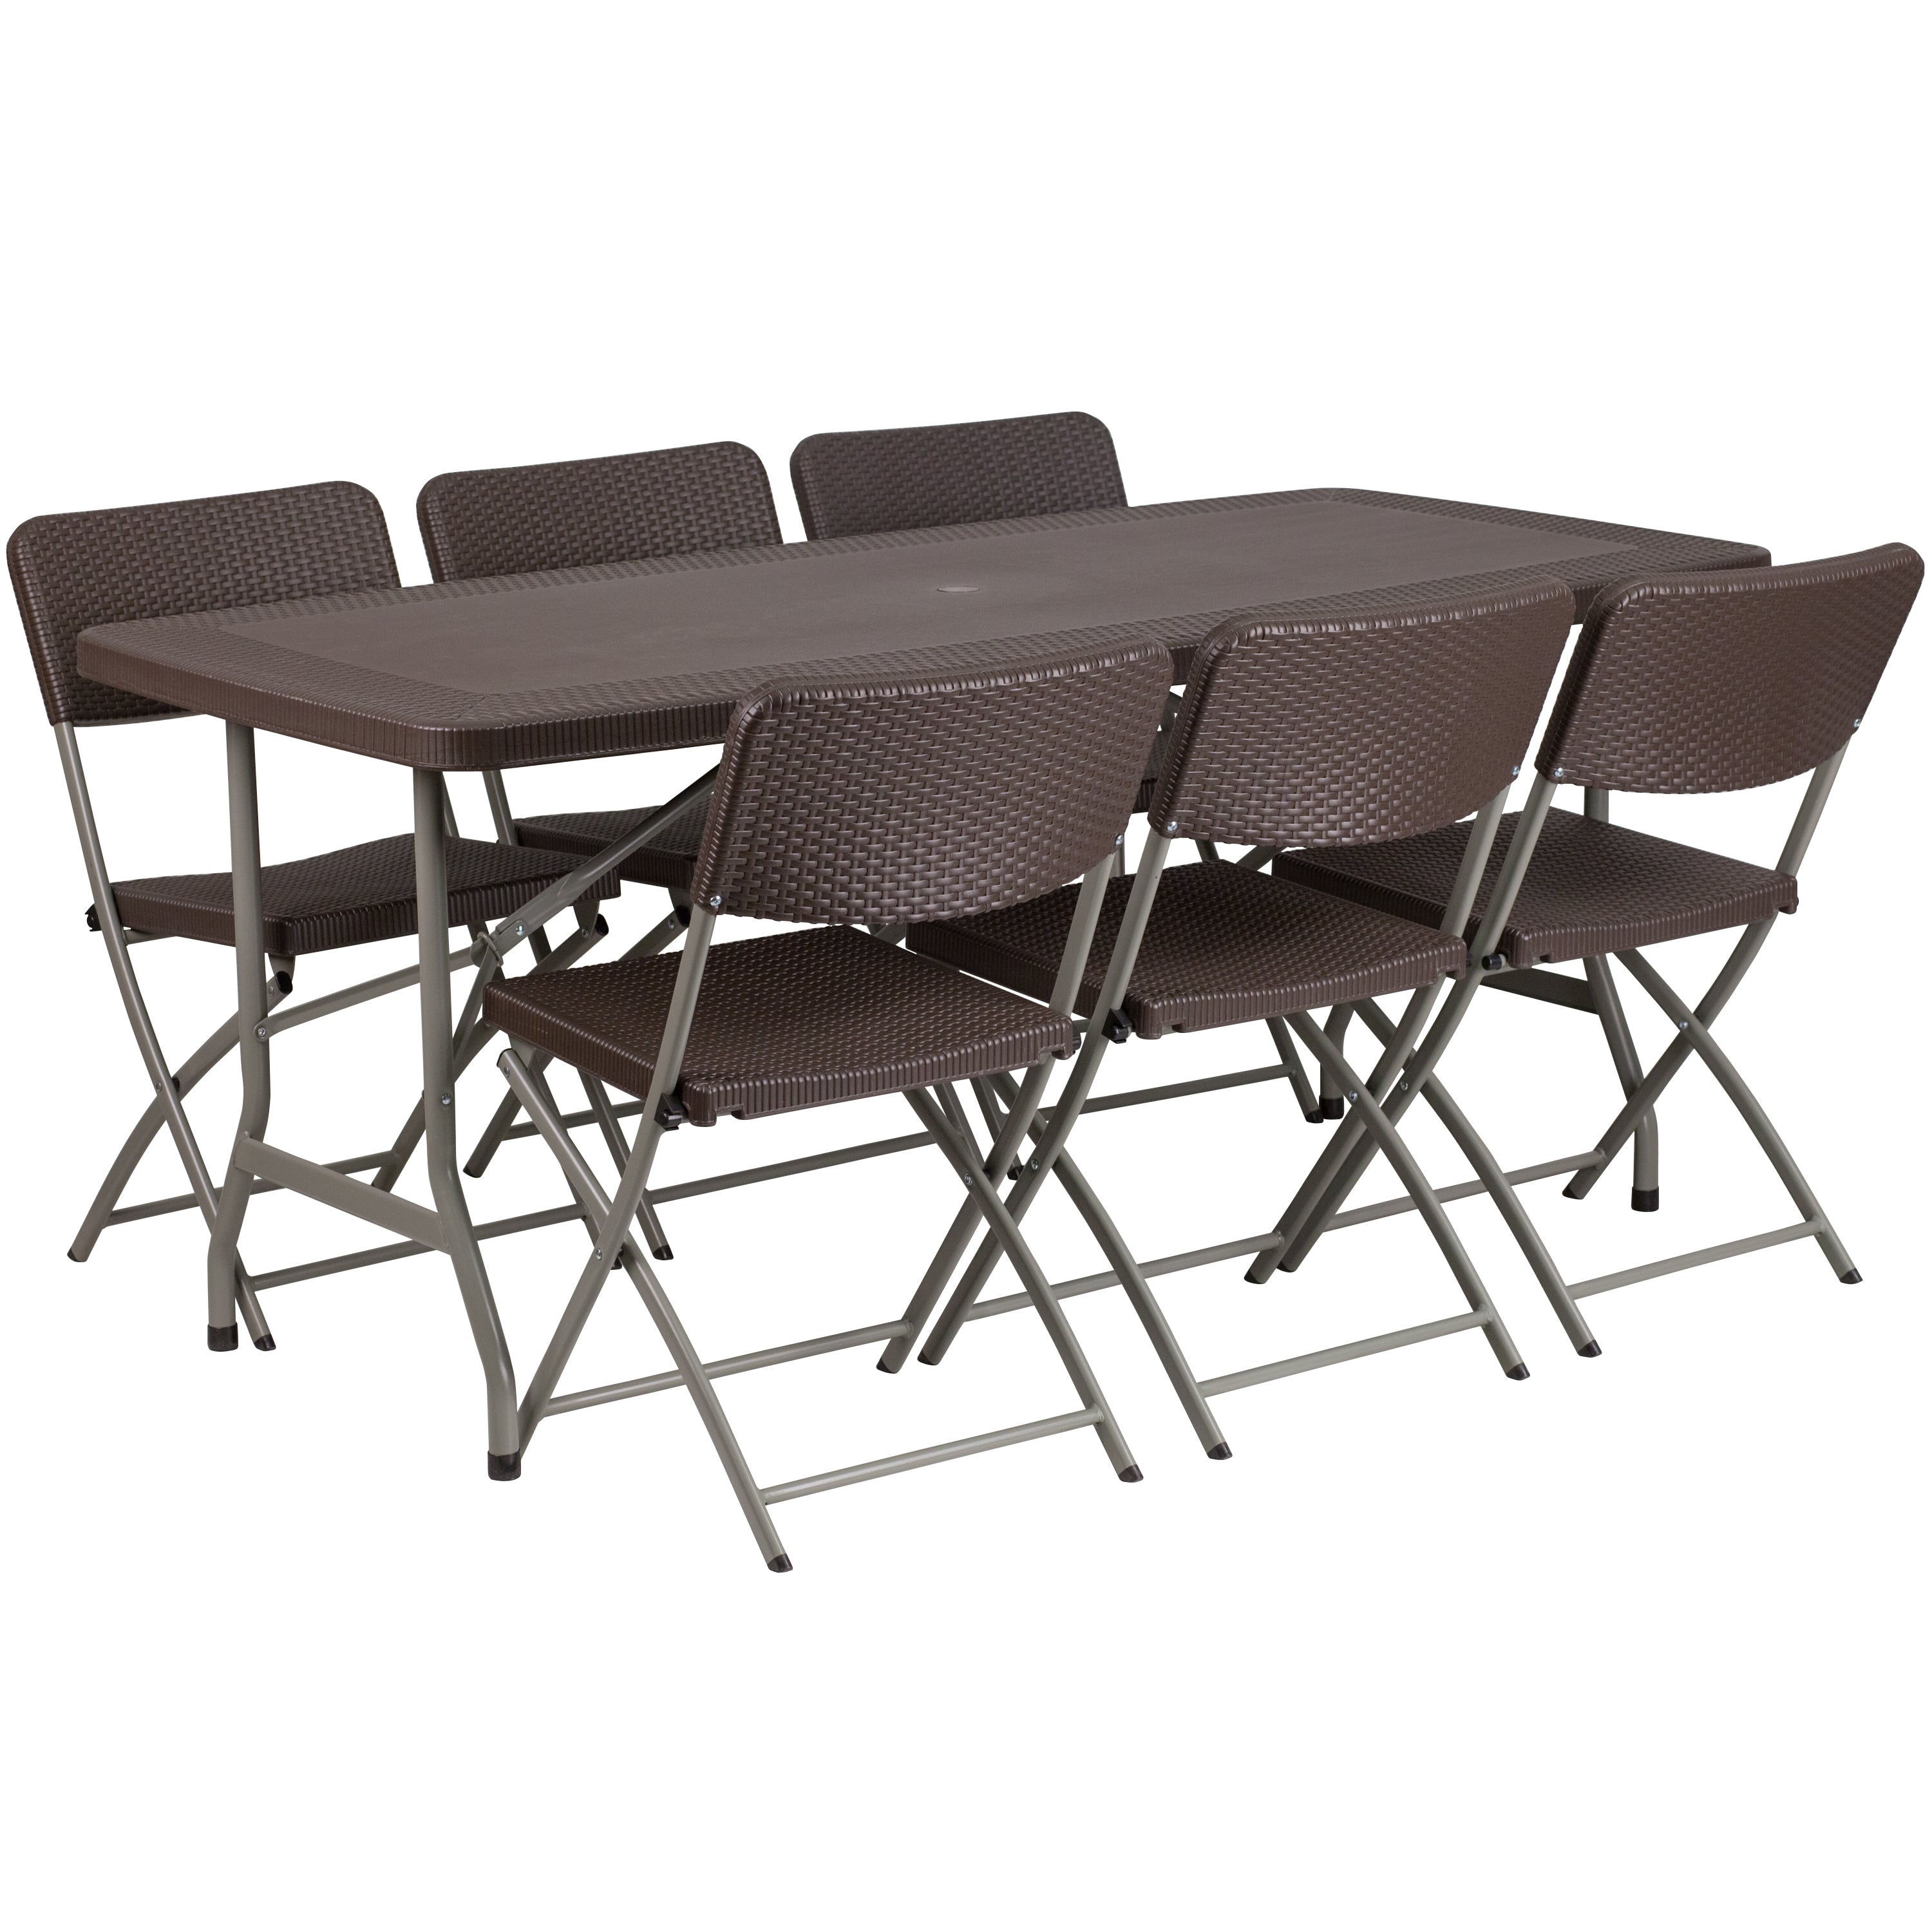 5.62-Foot Rattan Indoor-Outdoor Plastic Folding Table Set with 6 Chairs-Rattan Folding Table and Chair Set-Flash Furniture-Wall2Wall Furnishings